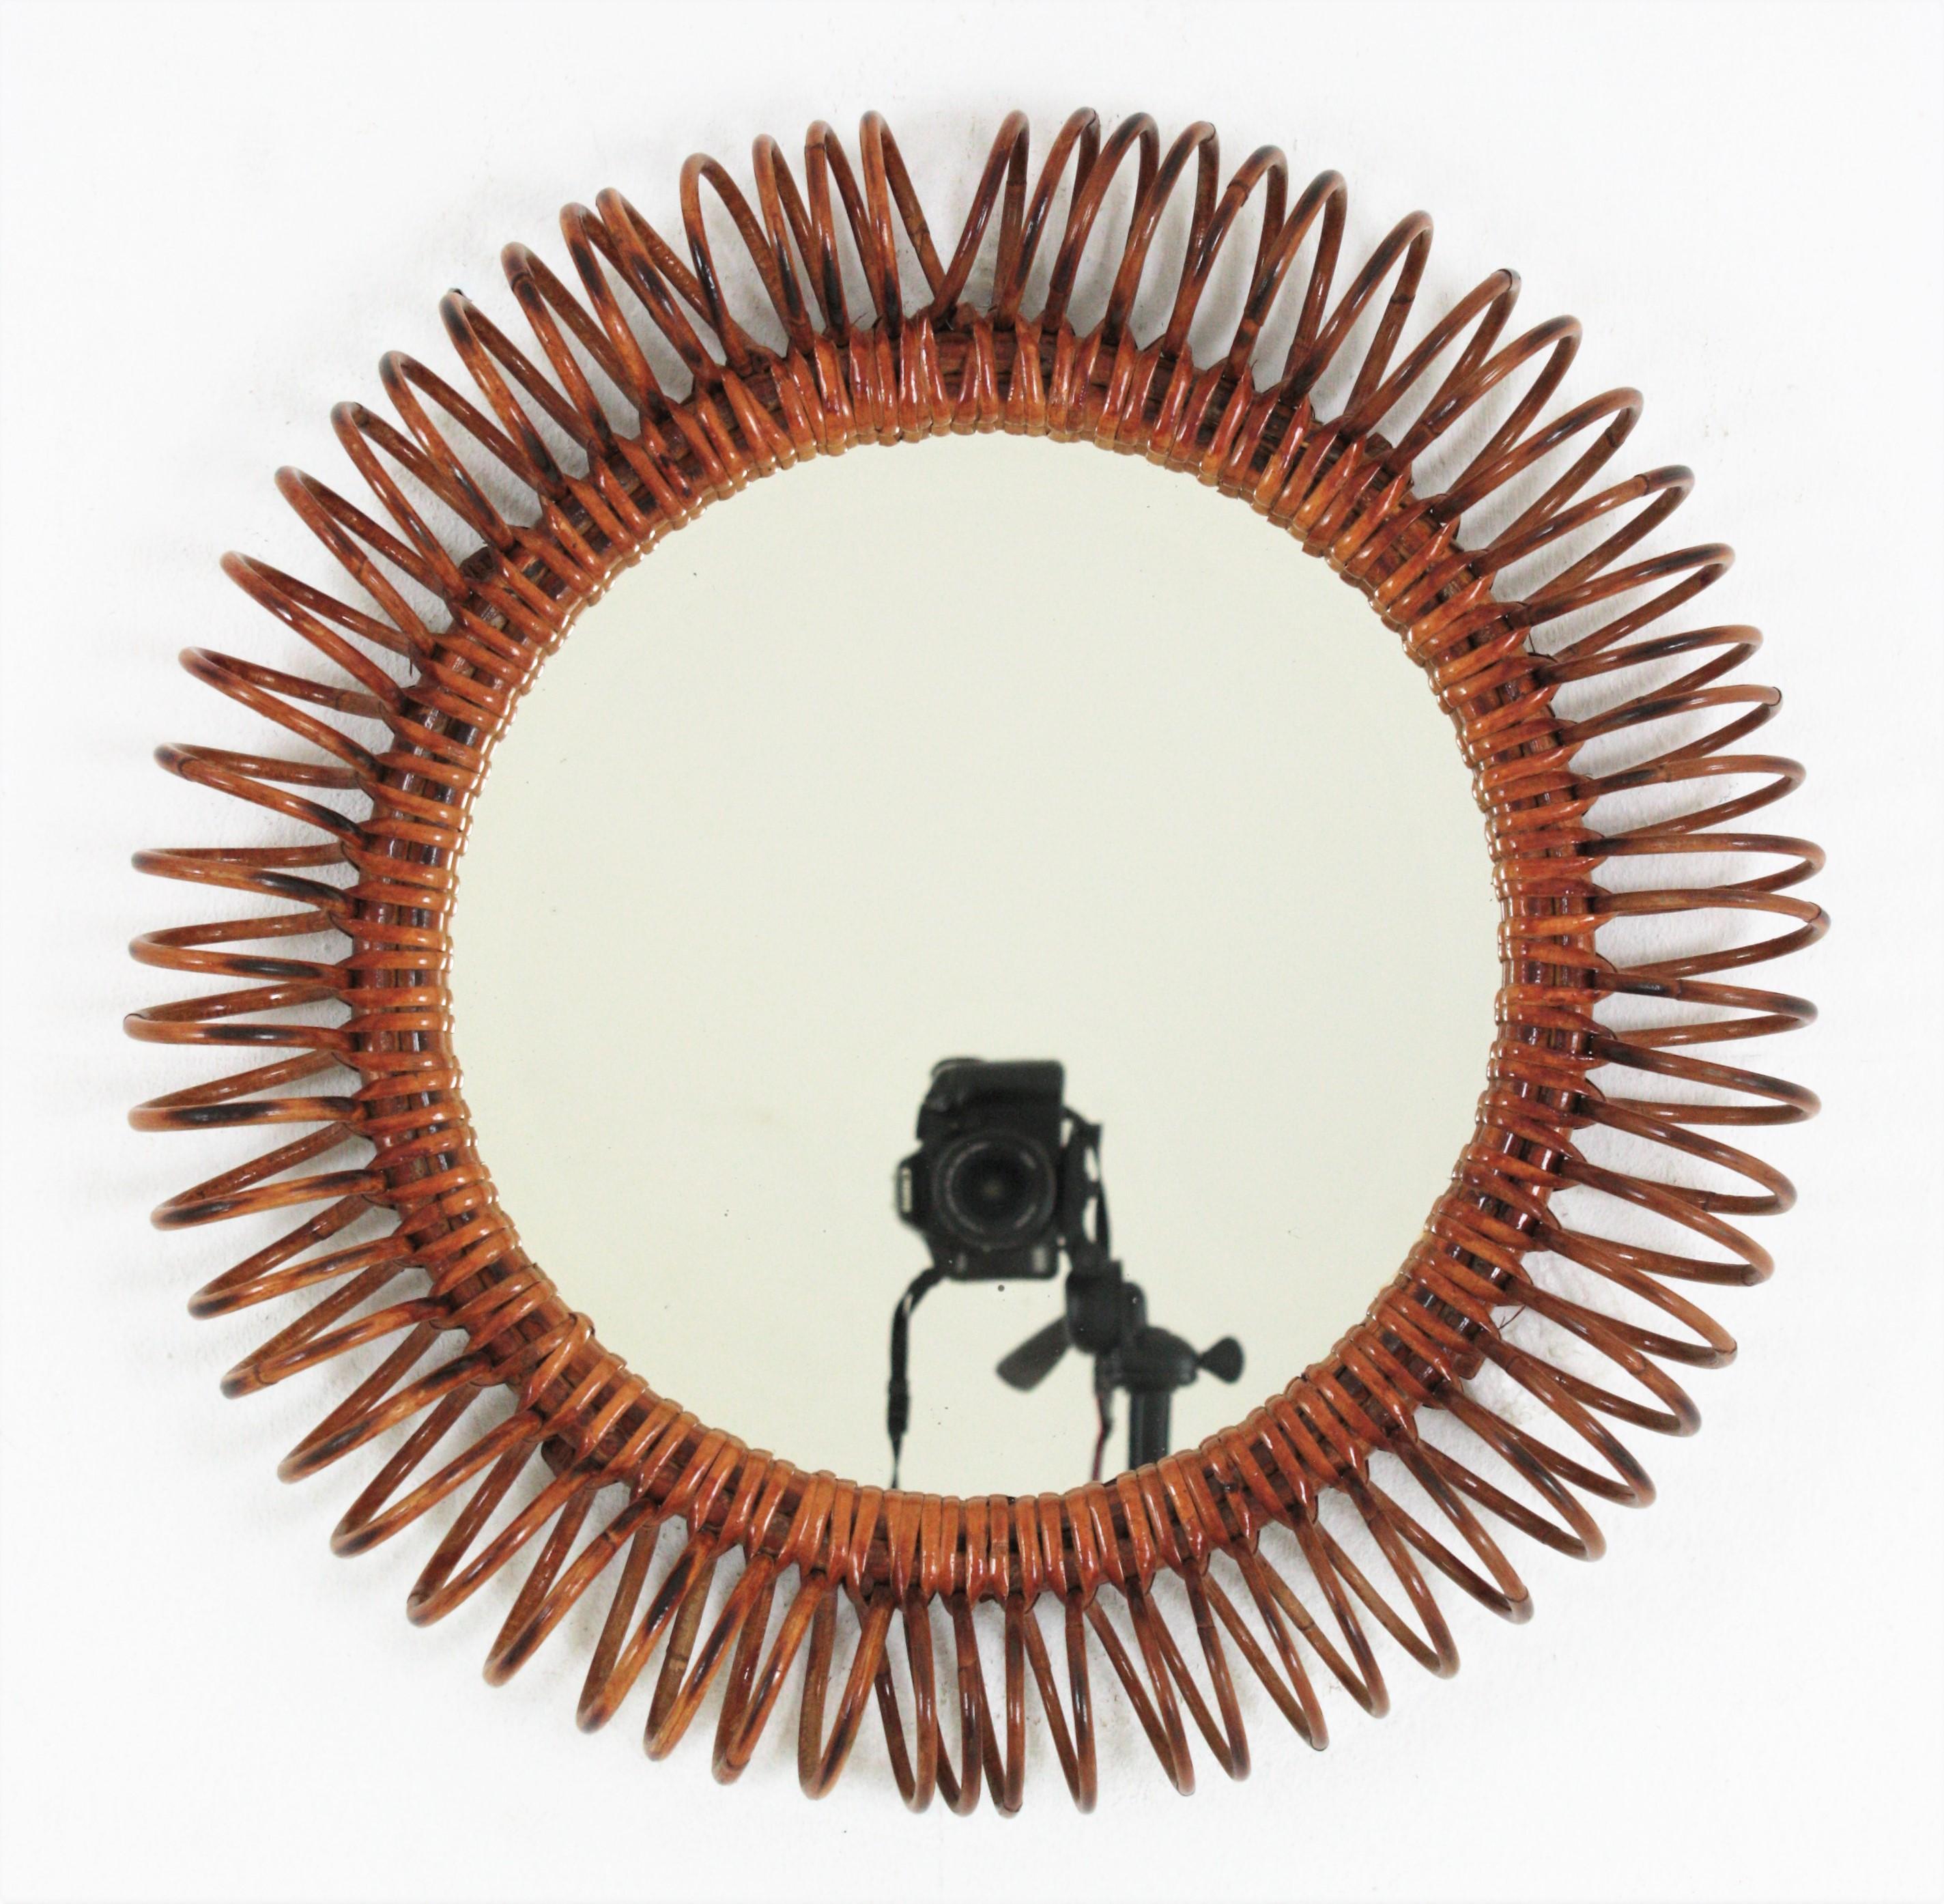 Italienischer Mid-Century Modern Spiegel aus Rattan, Franco Albini zugeschrieben. Italien, 1950er Jahre
Dieser coole runde Spiegel hat einen spiralförmigen Rahmen aus geflochtenem Rattan, der das zentrale Glas umgibt.
Stellen Sie ihn allein oder